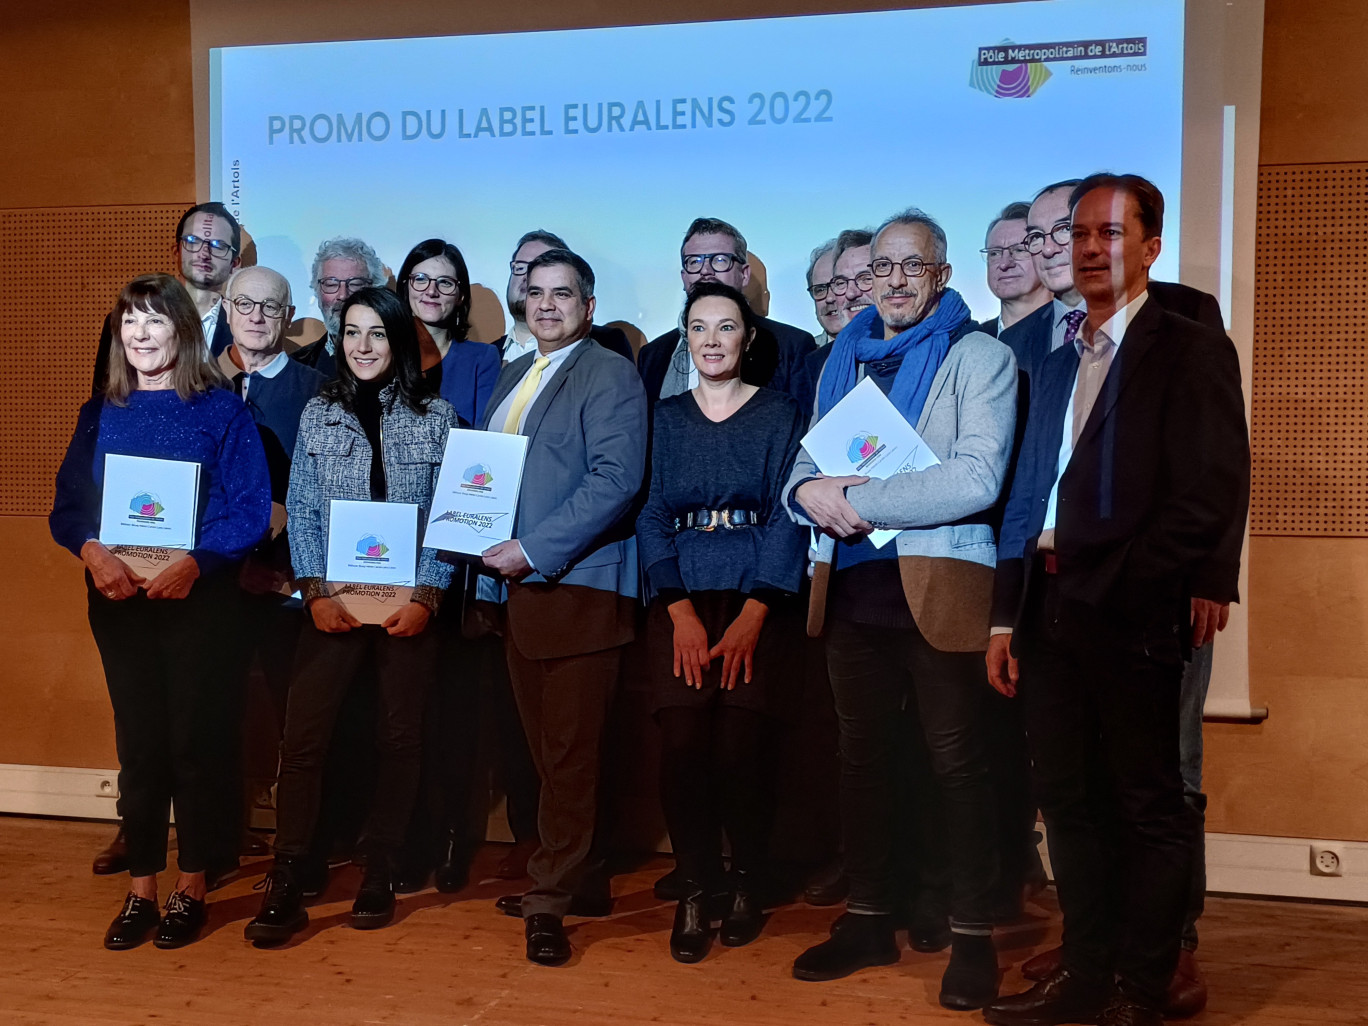 A droite Sylvain Robert, maire de Lens et président de la Communauté d'agglomération de Lens-Liévin, aux côtés des lauréats des Label Euralens 2022.